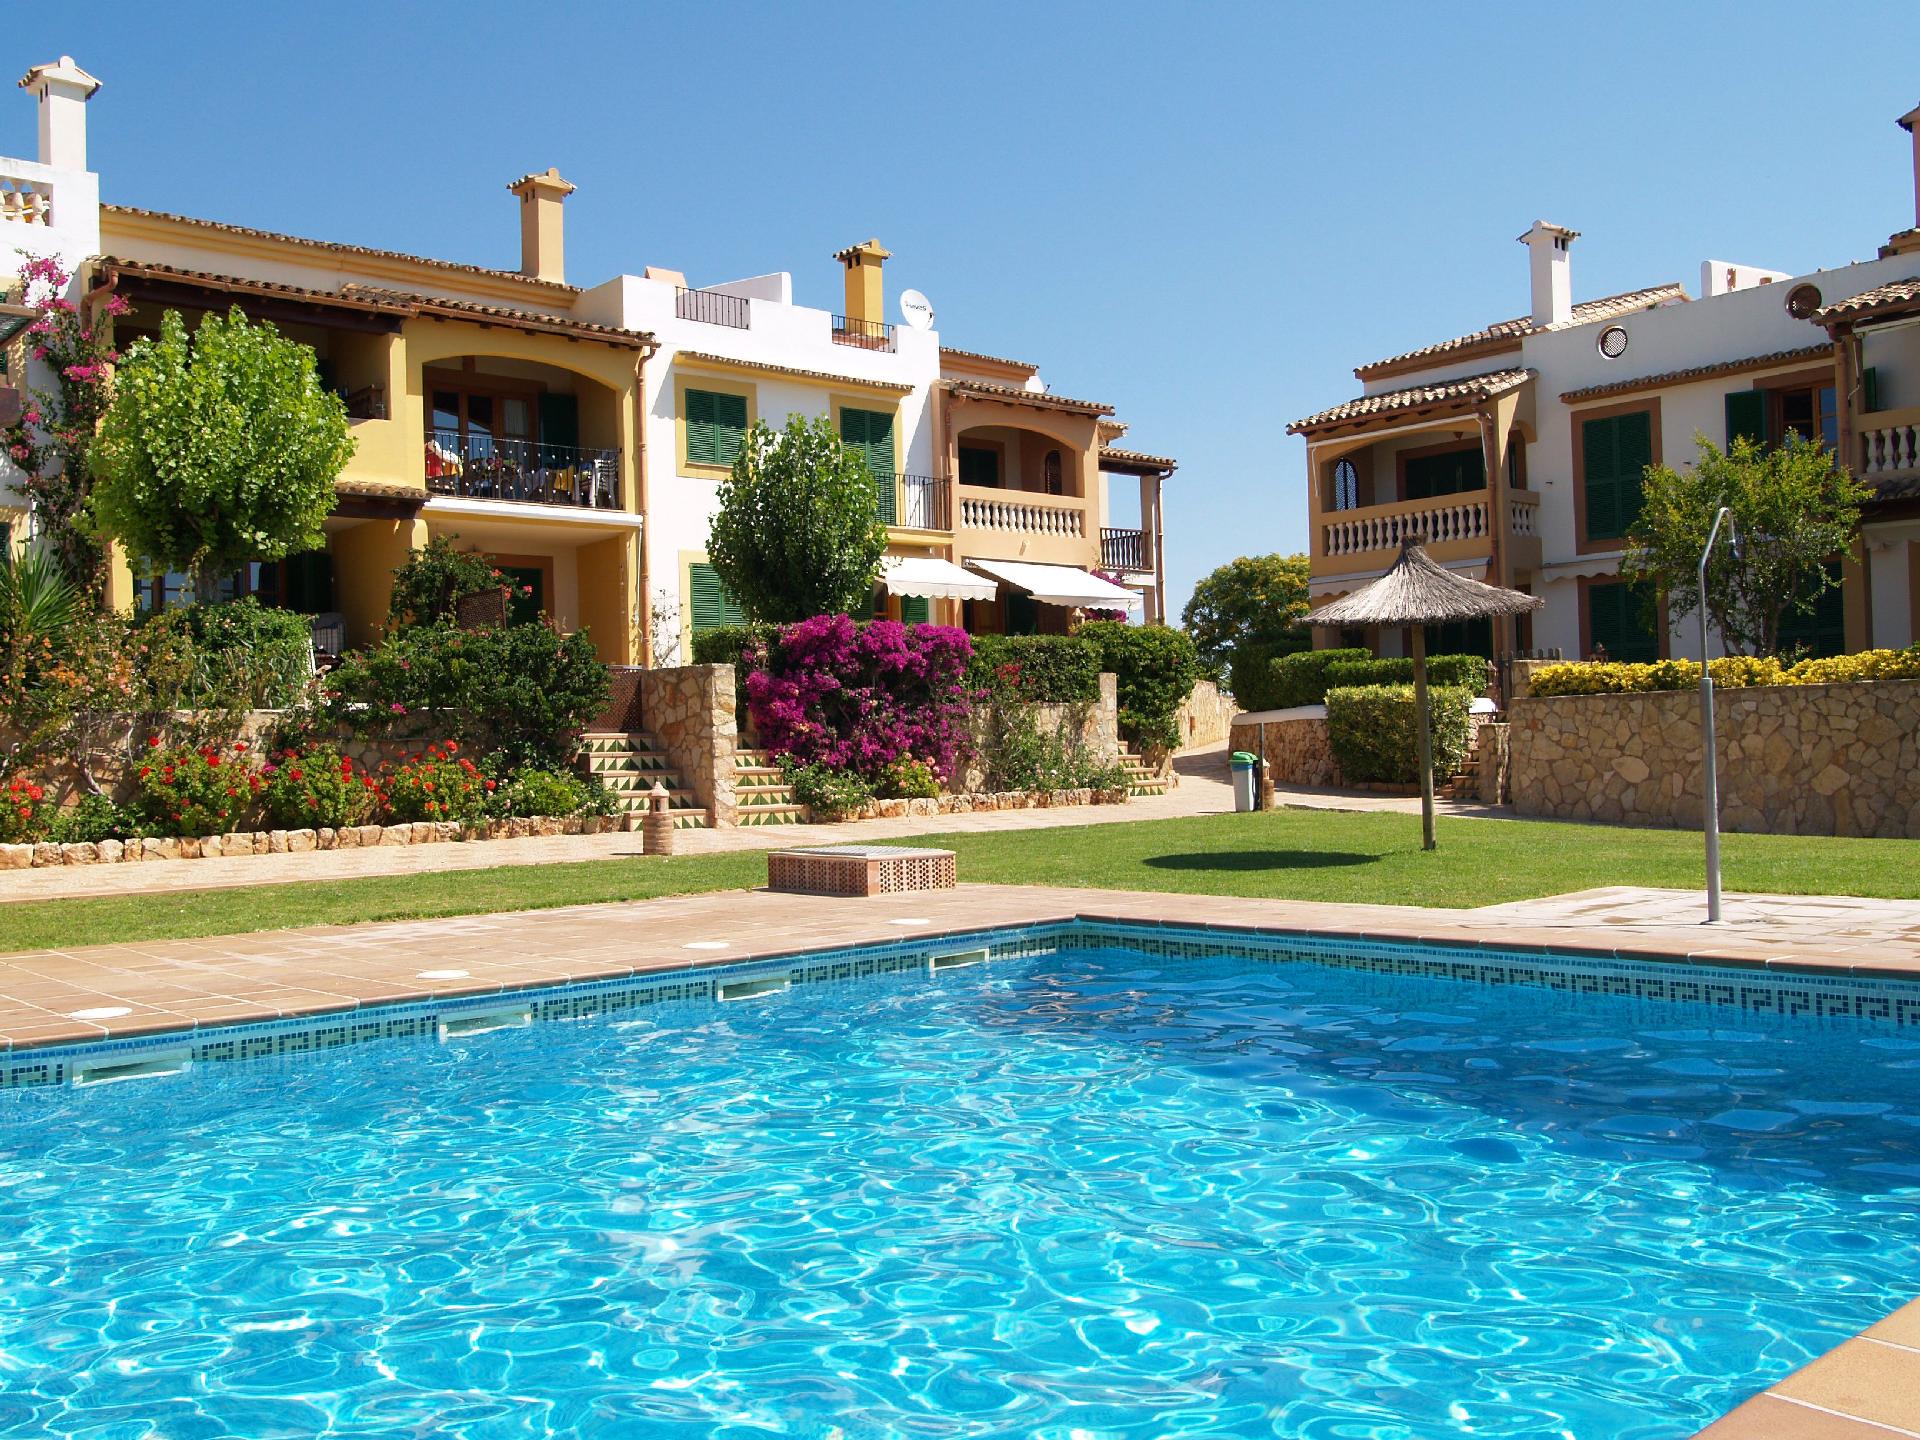 Ferienwohnung für 4 Personen ca. 85 m² i Ferienwohnung  Balearen